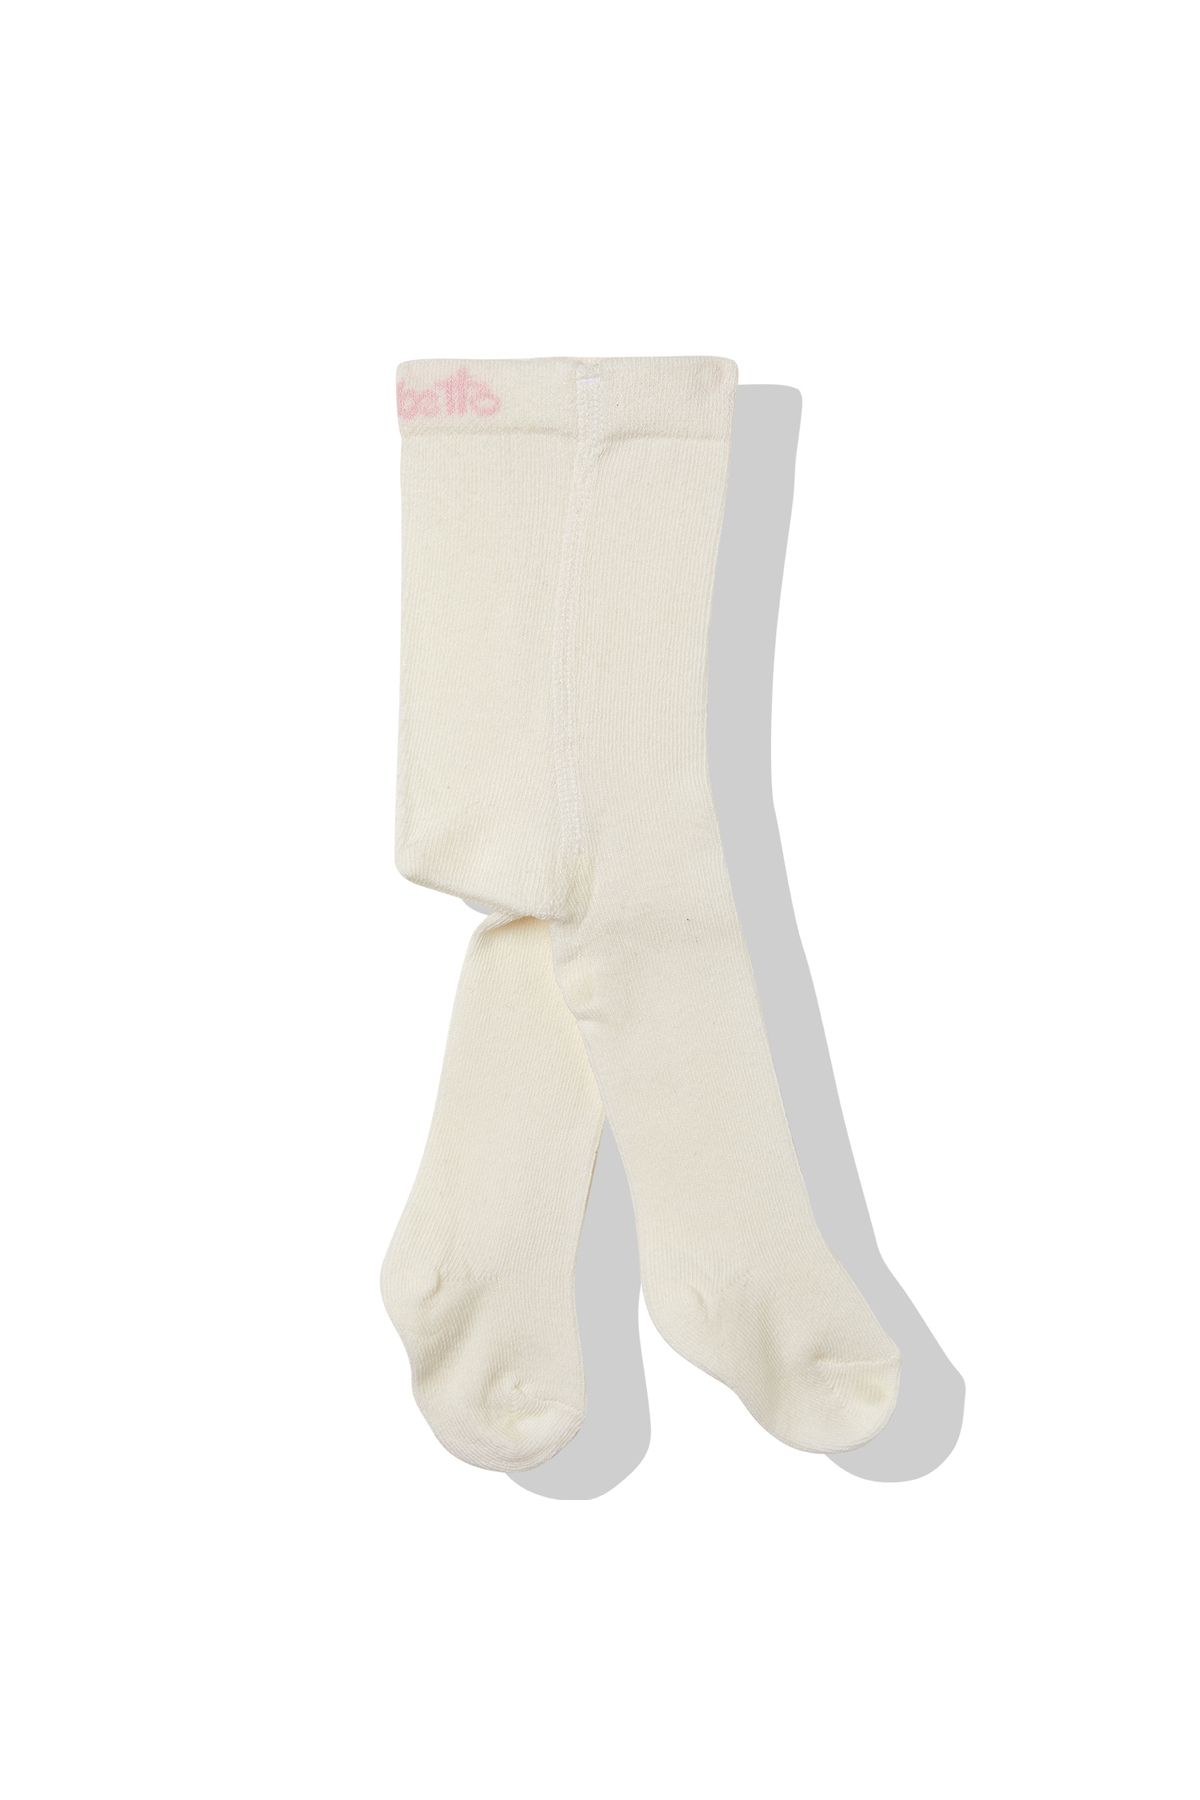 Bebetto Külotlu Çorap Kız 1 Adet (ALWAYS) S 633